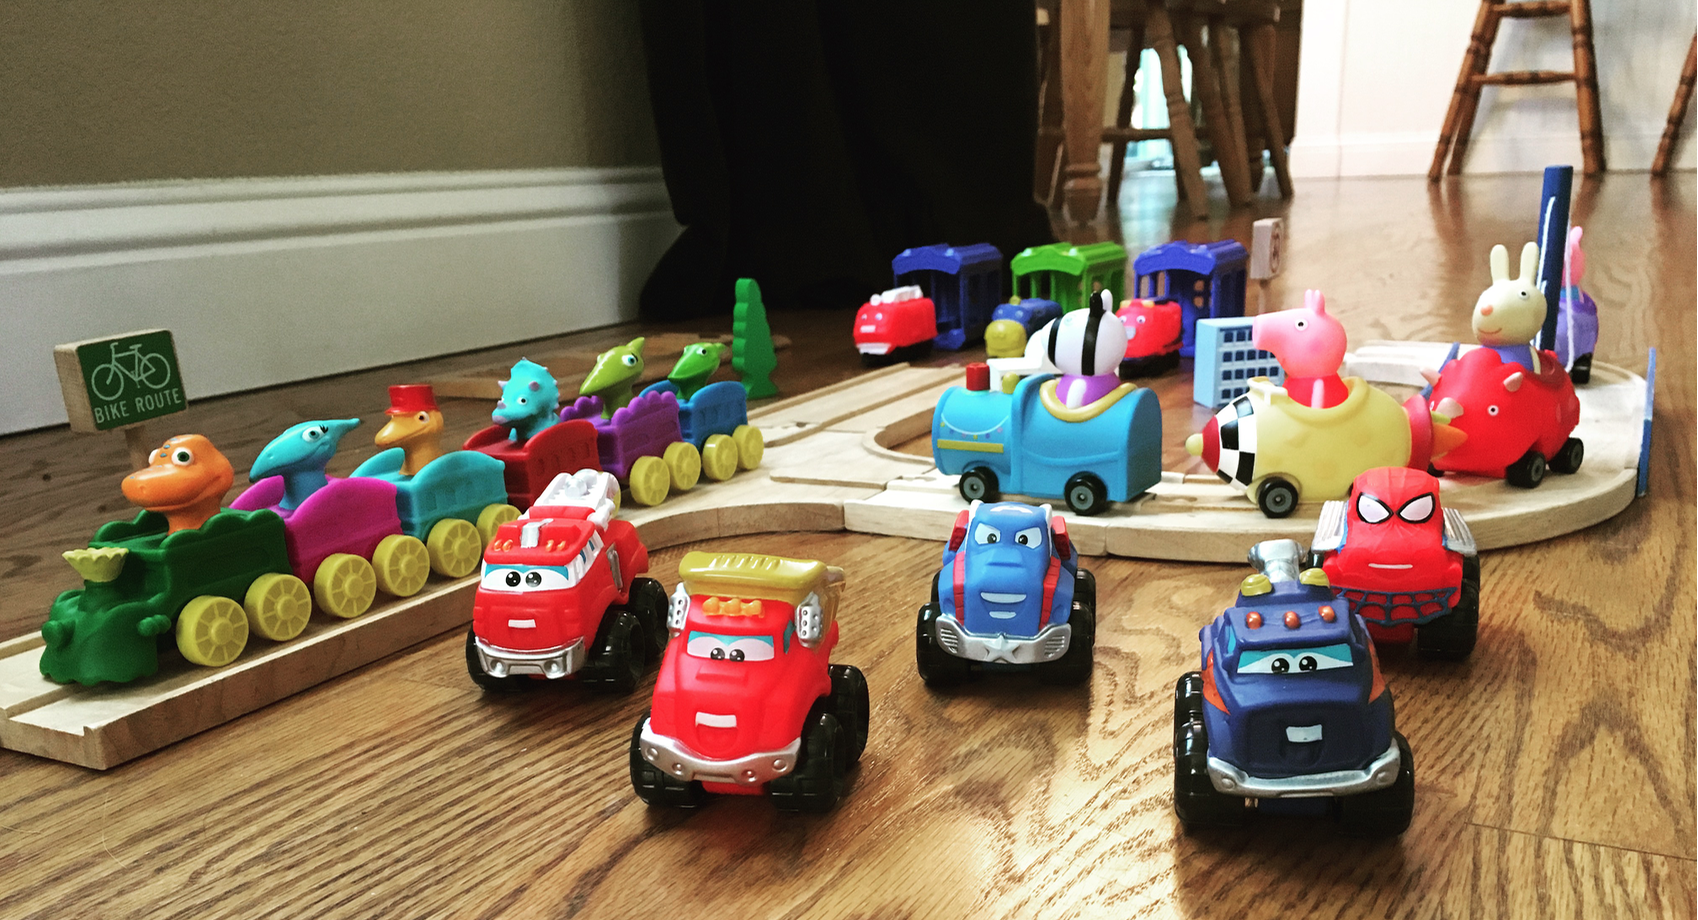 Mini toy vehicles